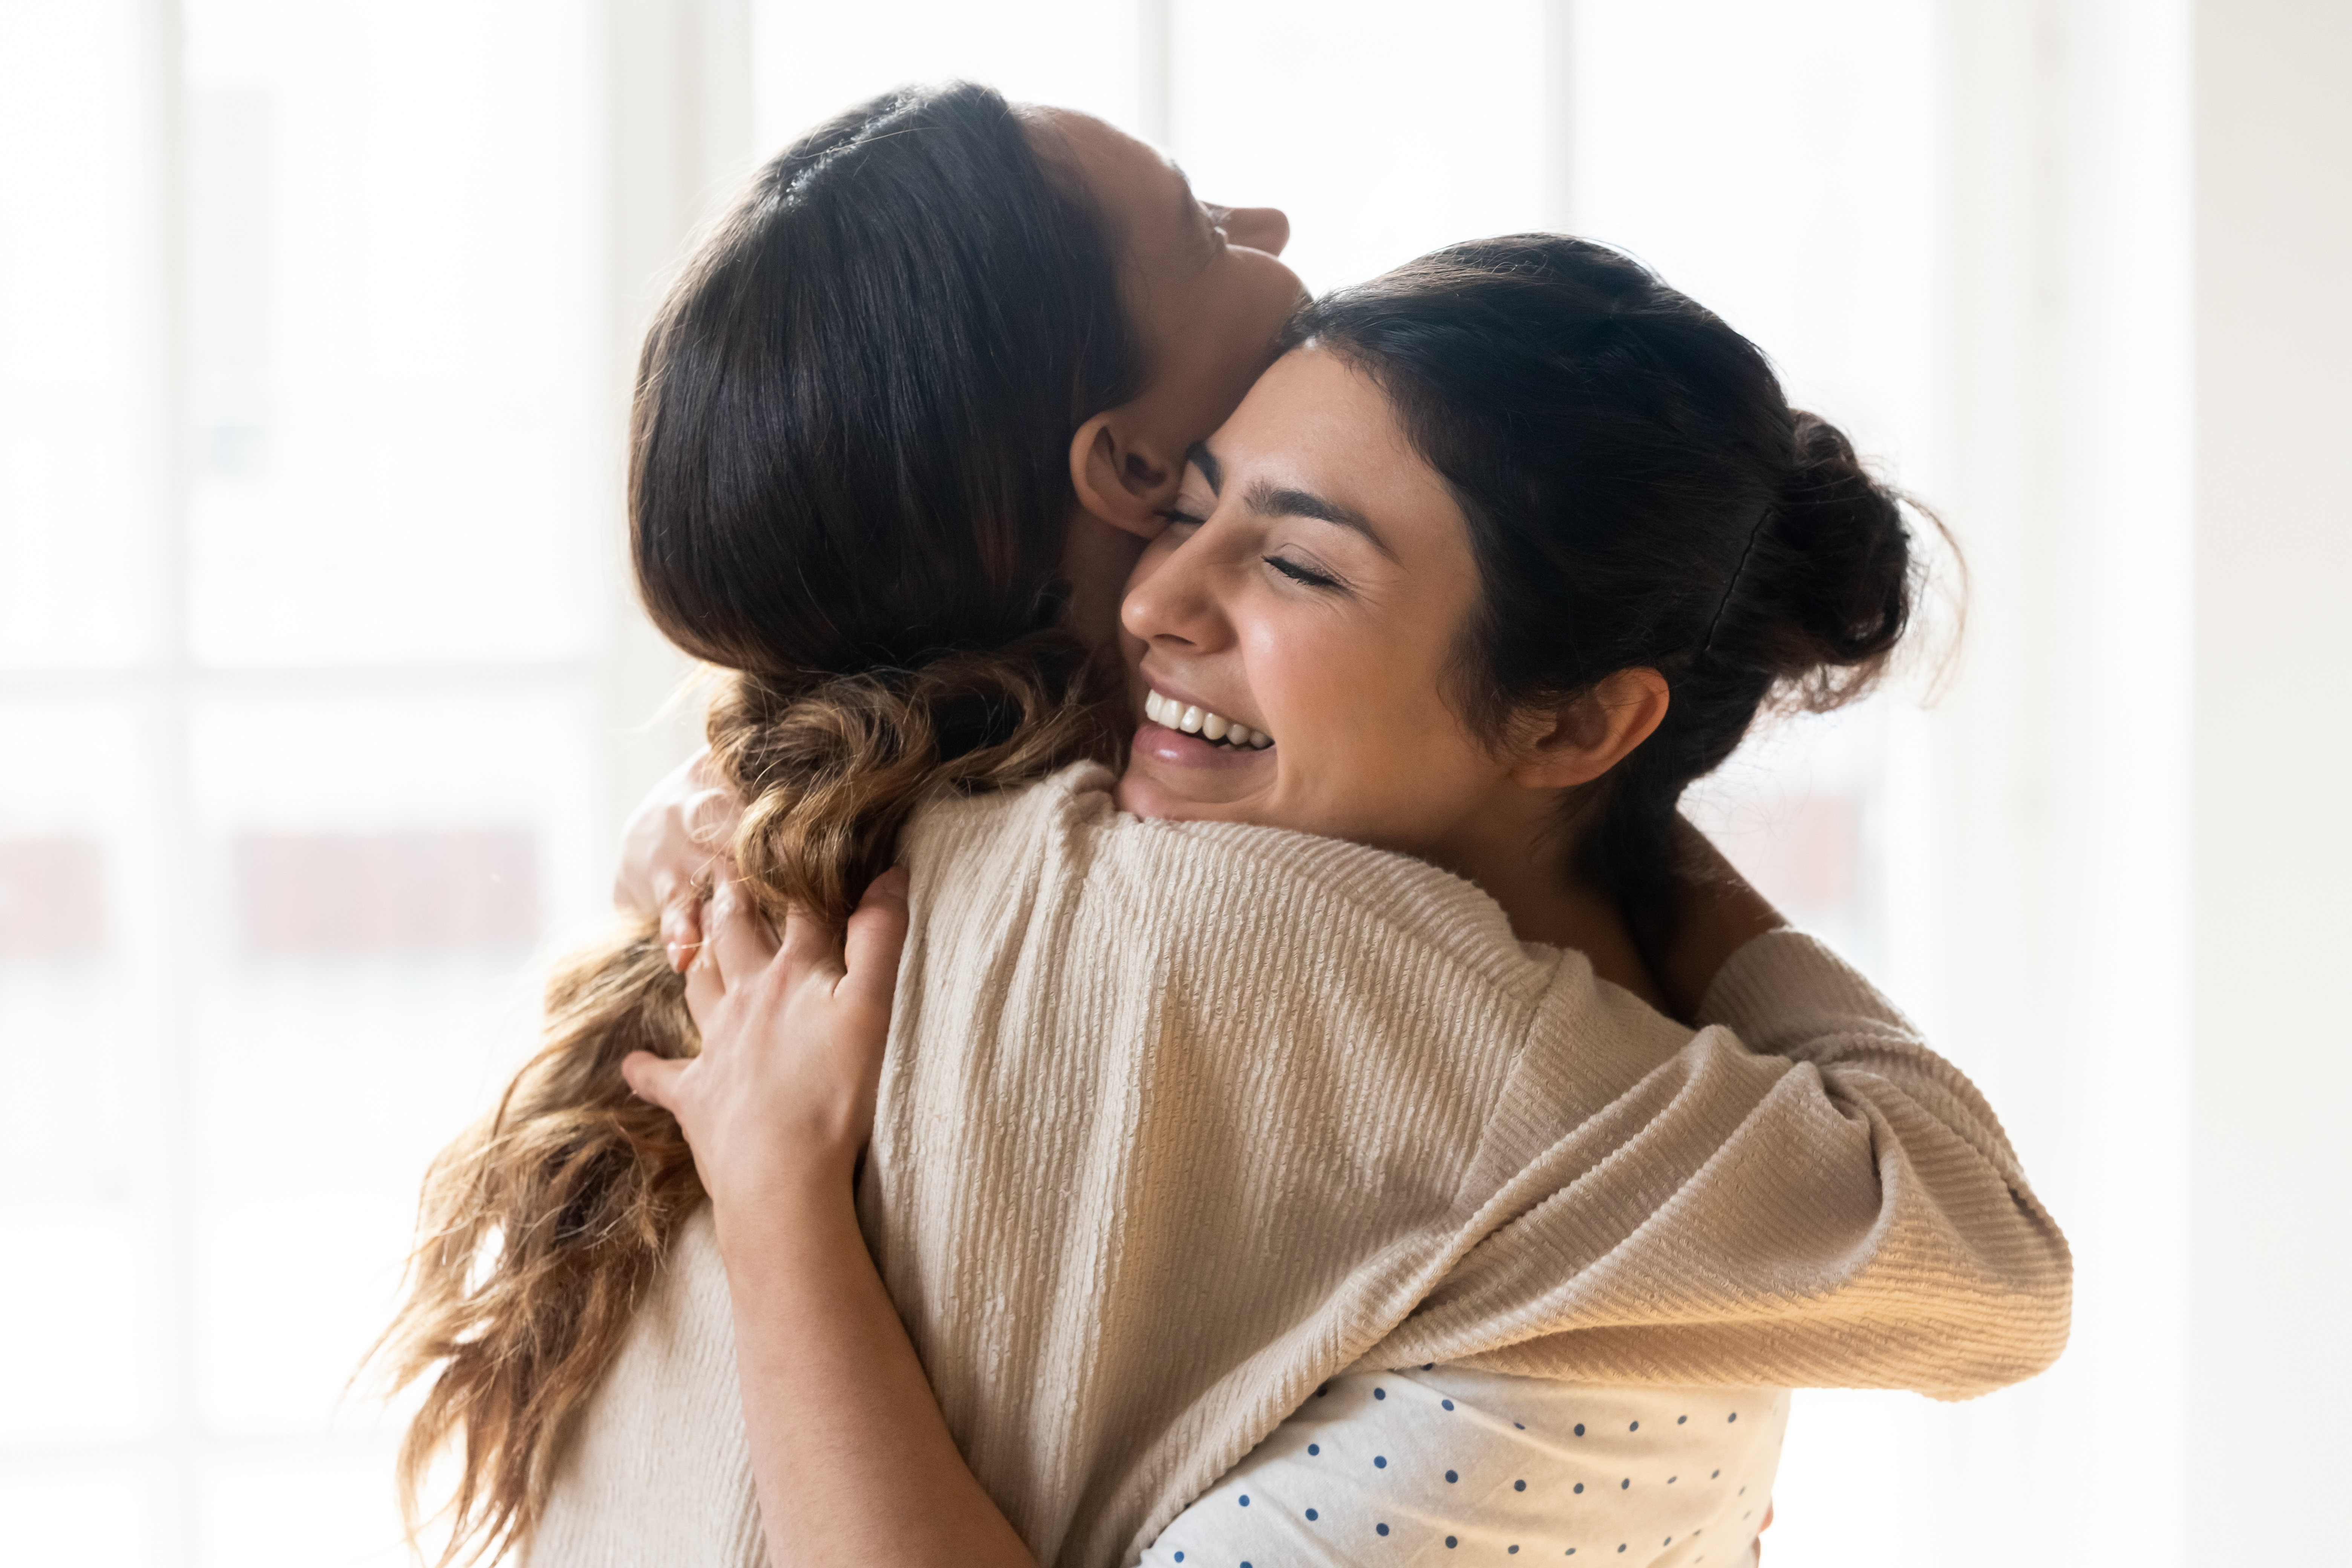 Zwei beste Freundinnen, die sich umarmen | Quelle: Shutterstock